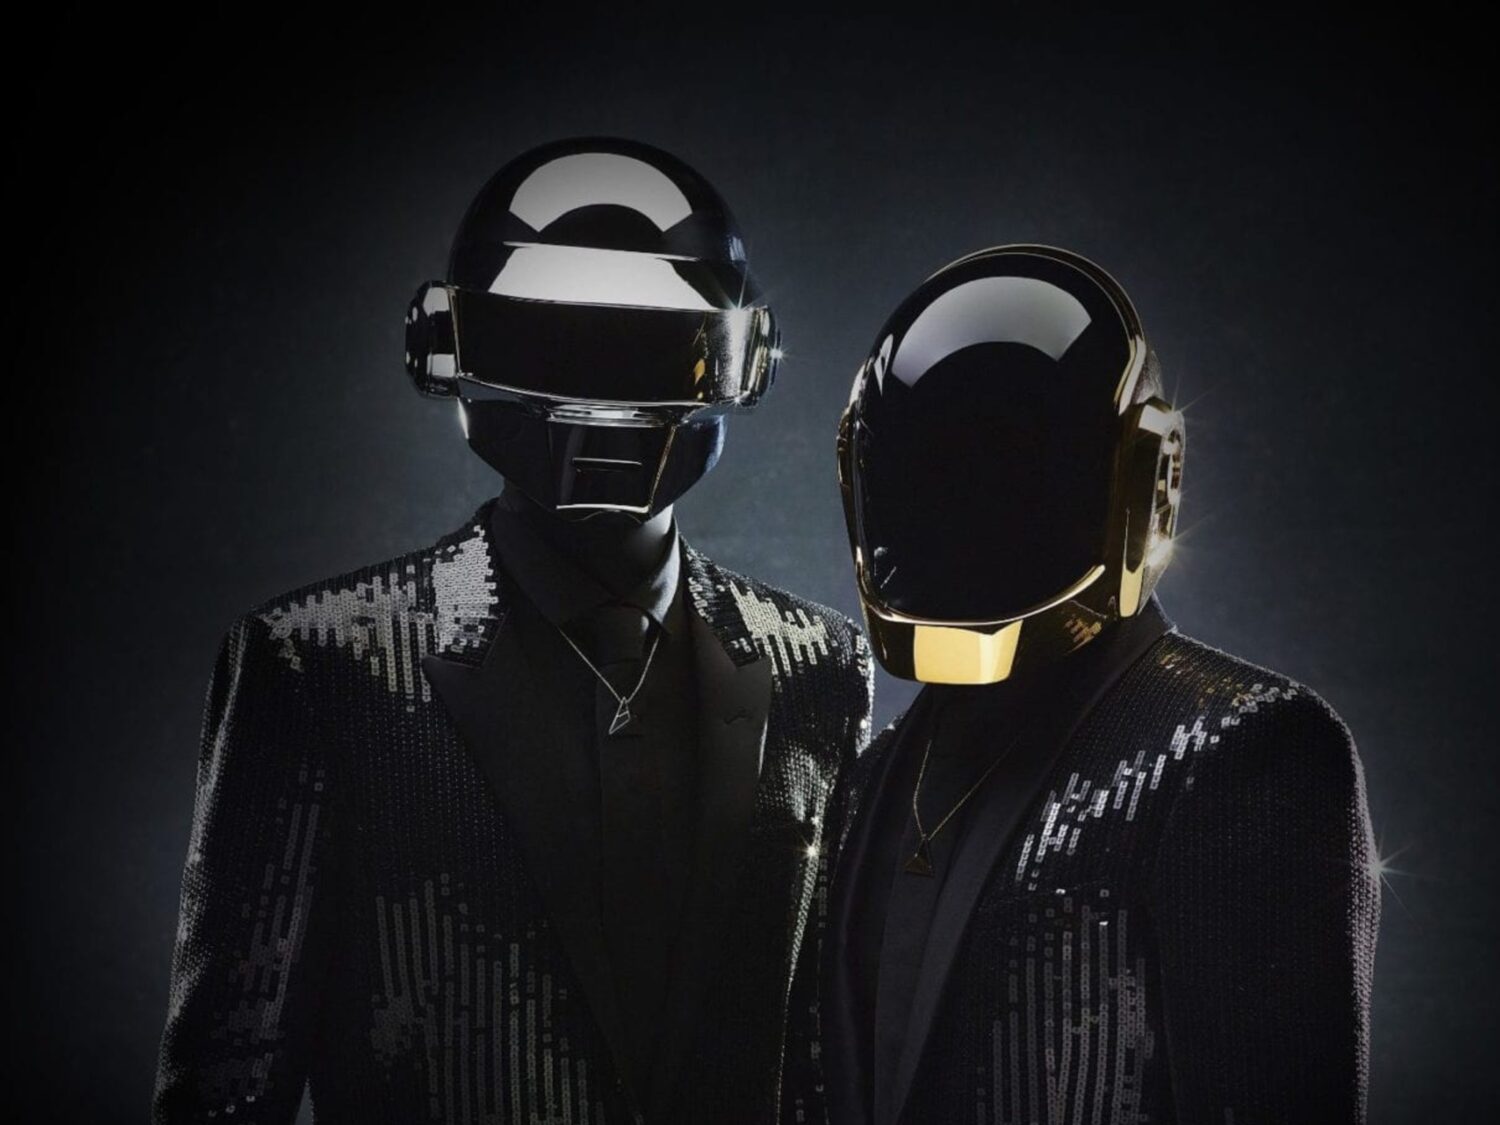 Candlelight: Tributo aos Daft Punk à luz das velas